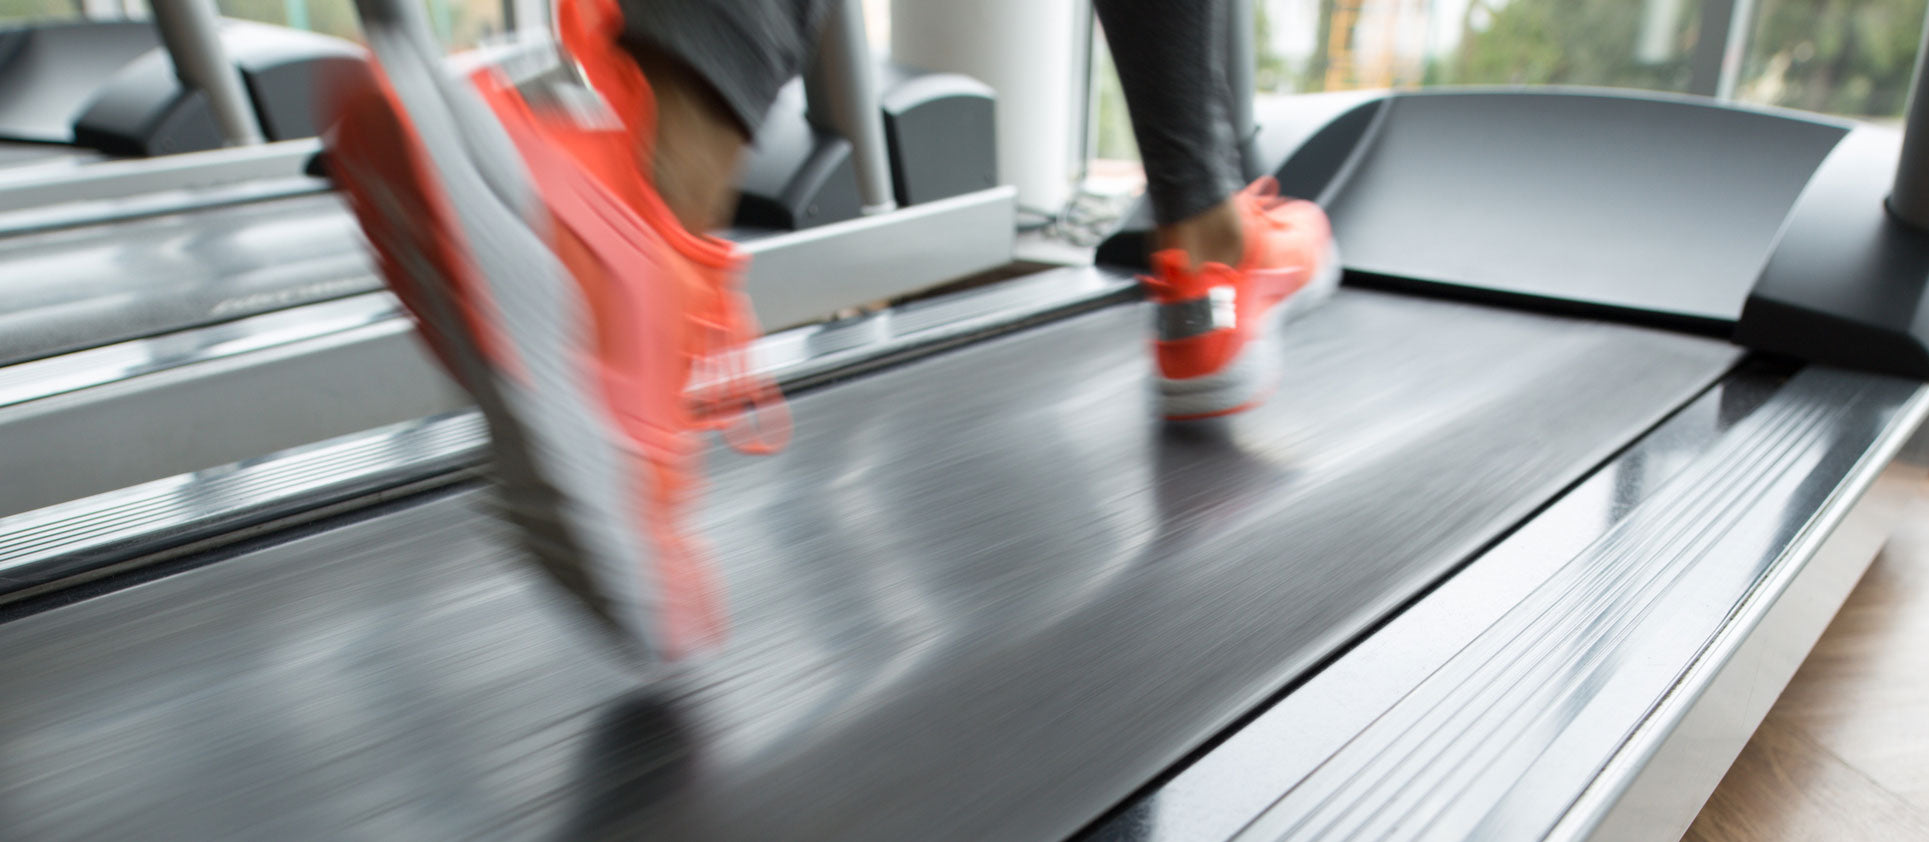 How Long Should a Treadmill Last?